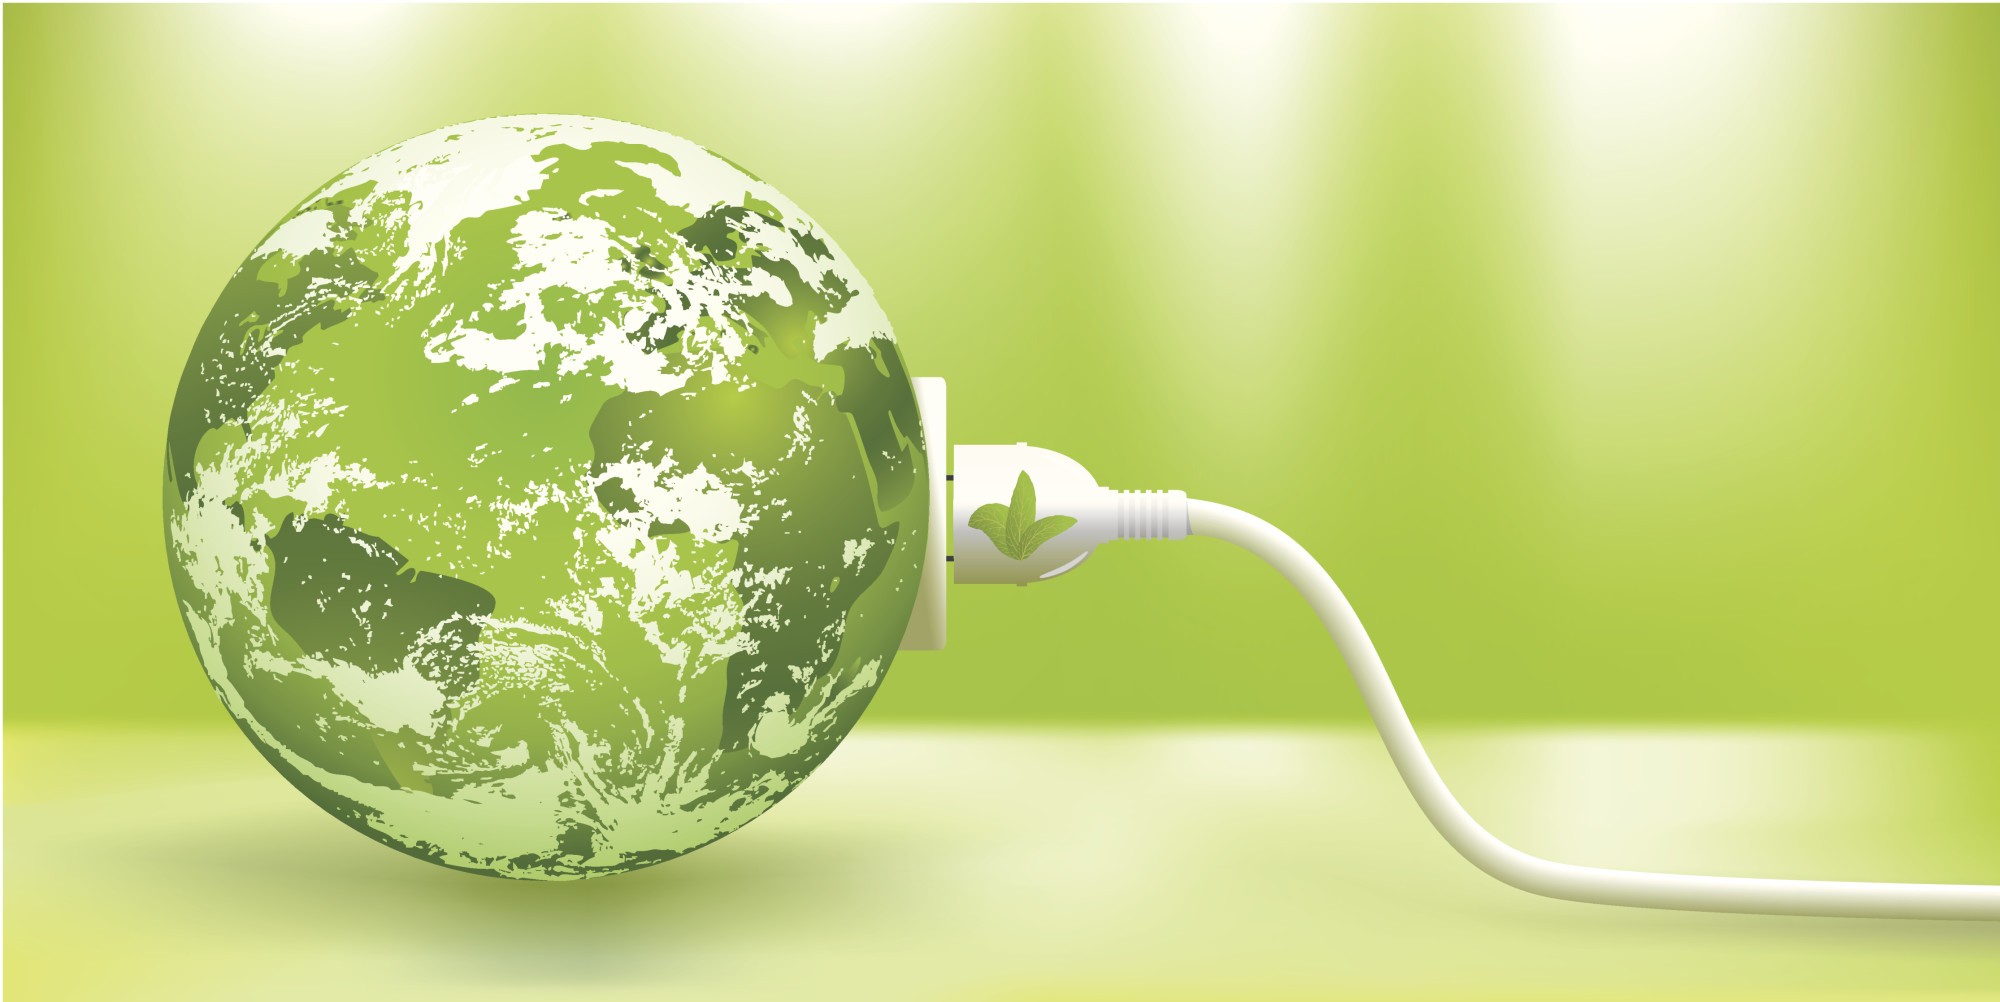 Enerji tasarrufu yapmak için 10 ipucu - Sepaş Blog